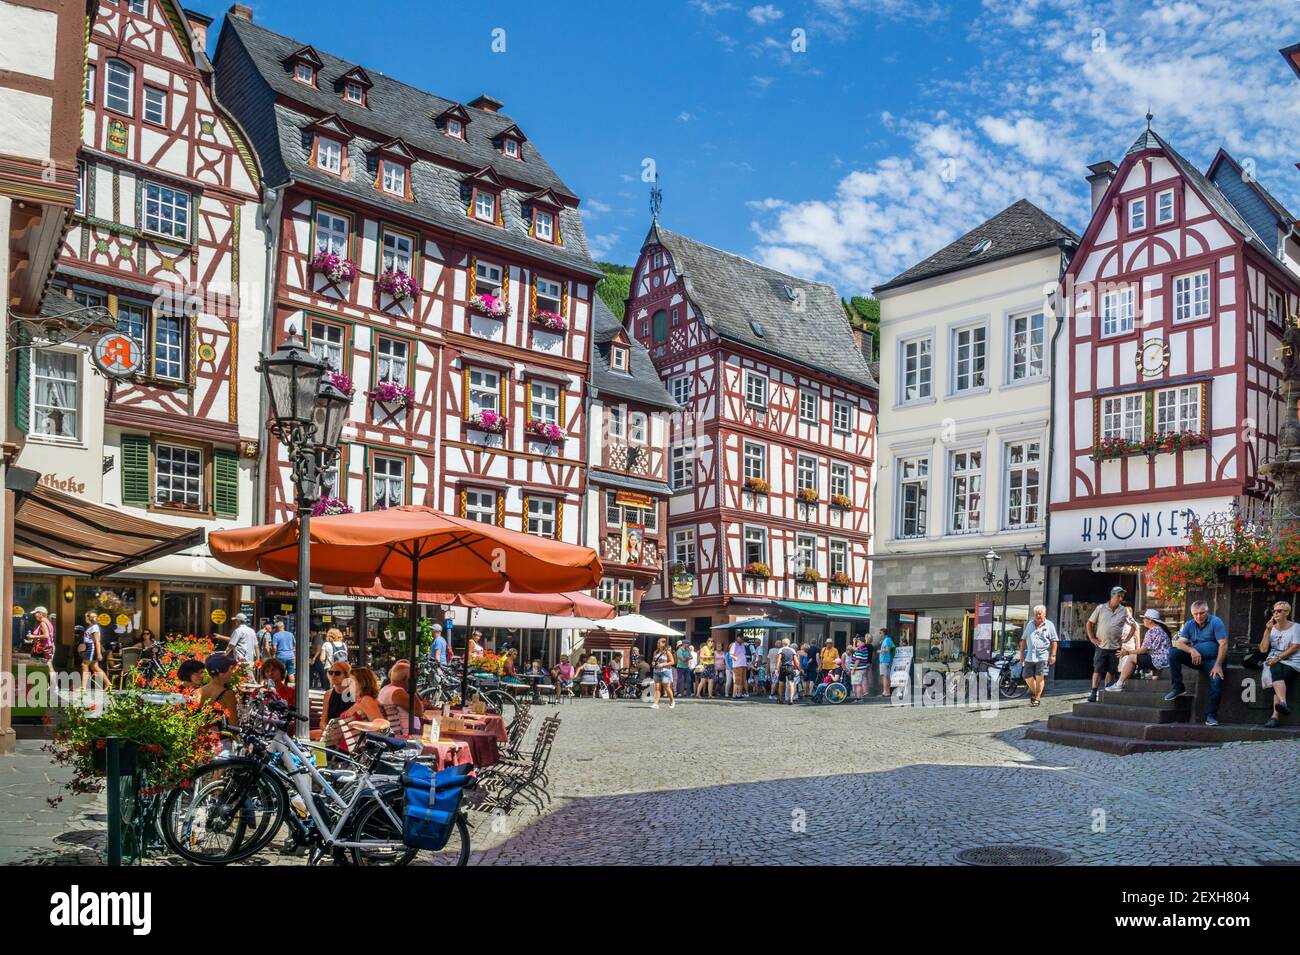 Case a graticcio nella piazza medievale del mercato di Bernkastel, Bernkastel-Kues, Mosella centrale, Renania-Palatinato, Germania Foto Stock